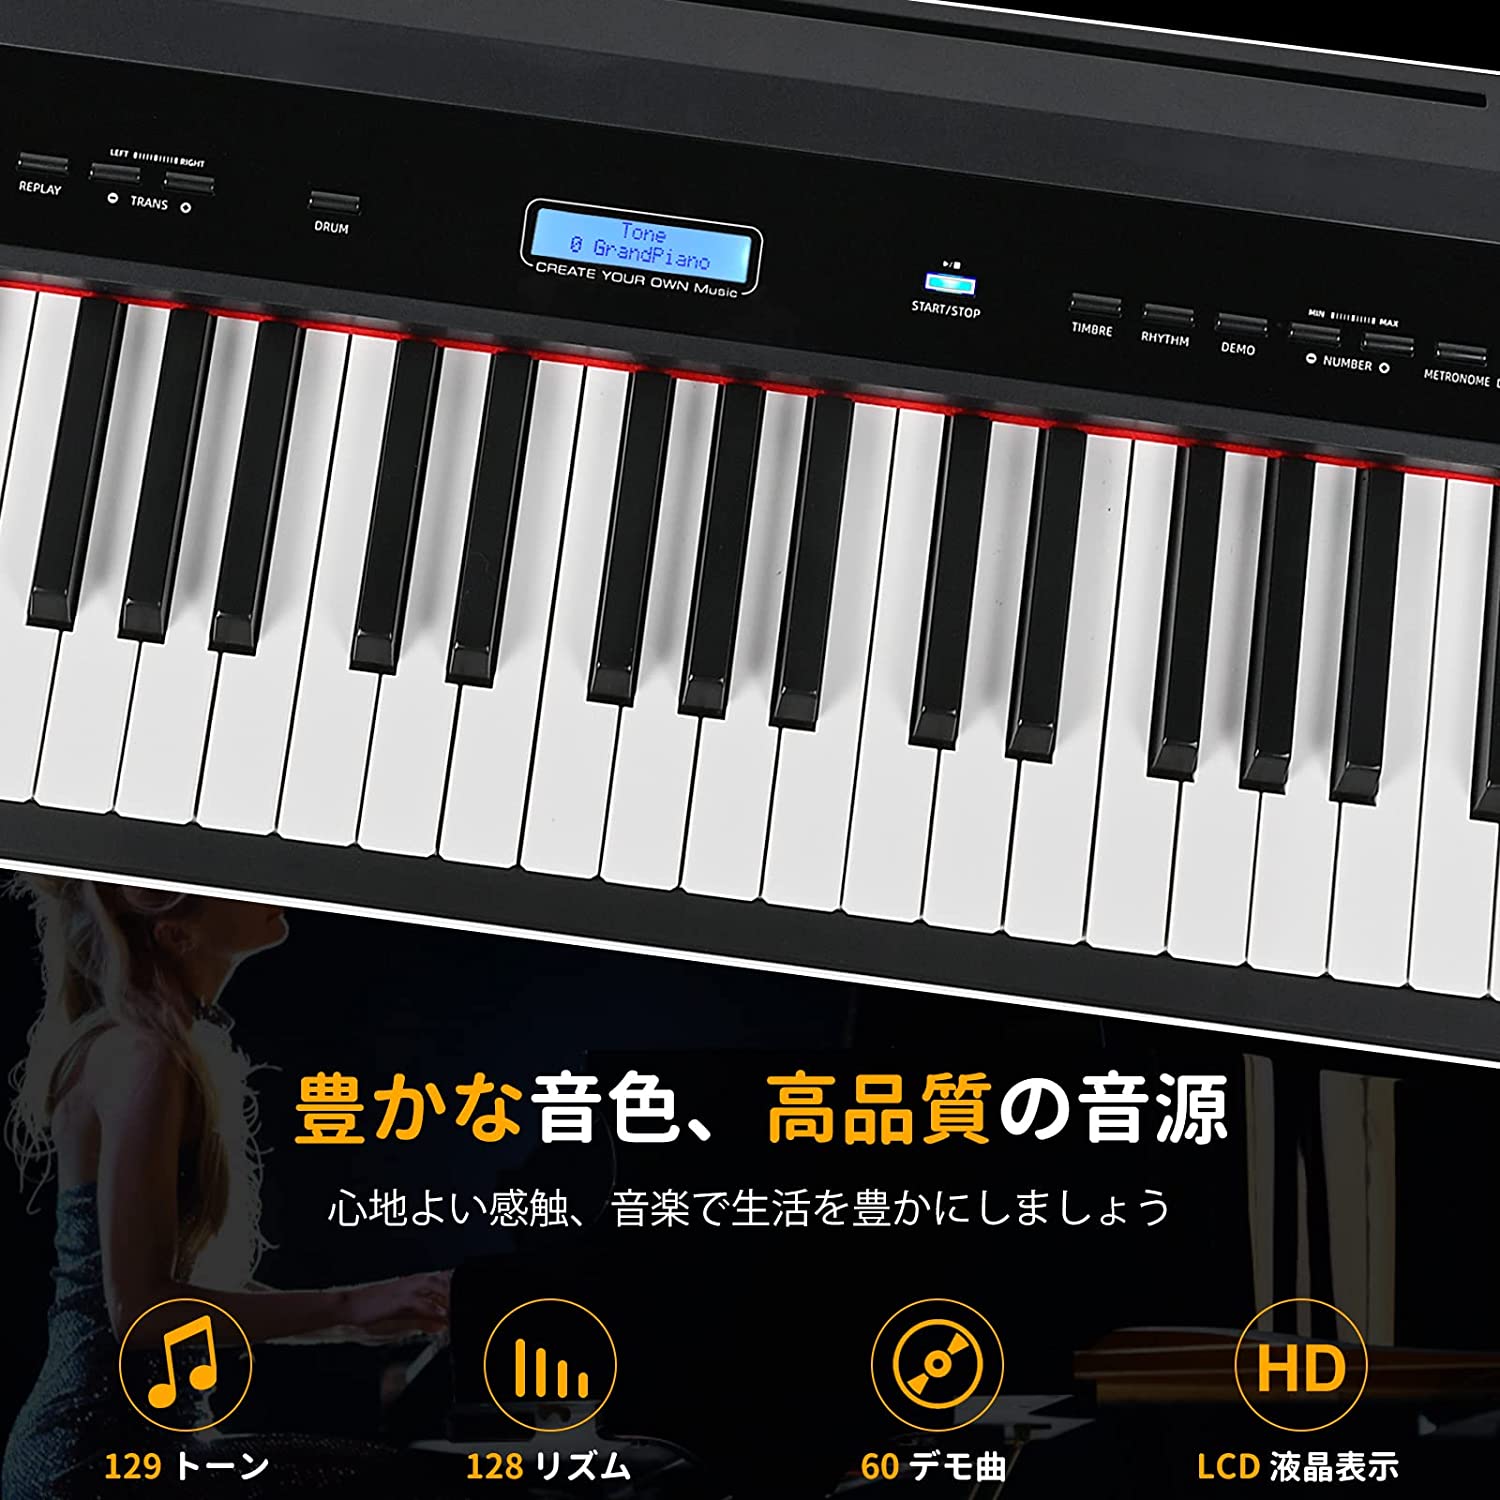 ZHRUNS 電子ピアノ 88鍵盤 3本ペダル MIDI端子対応 本物ピアノのような